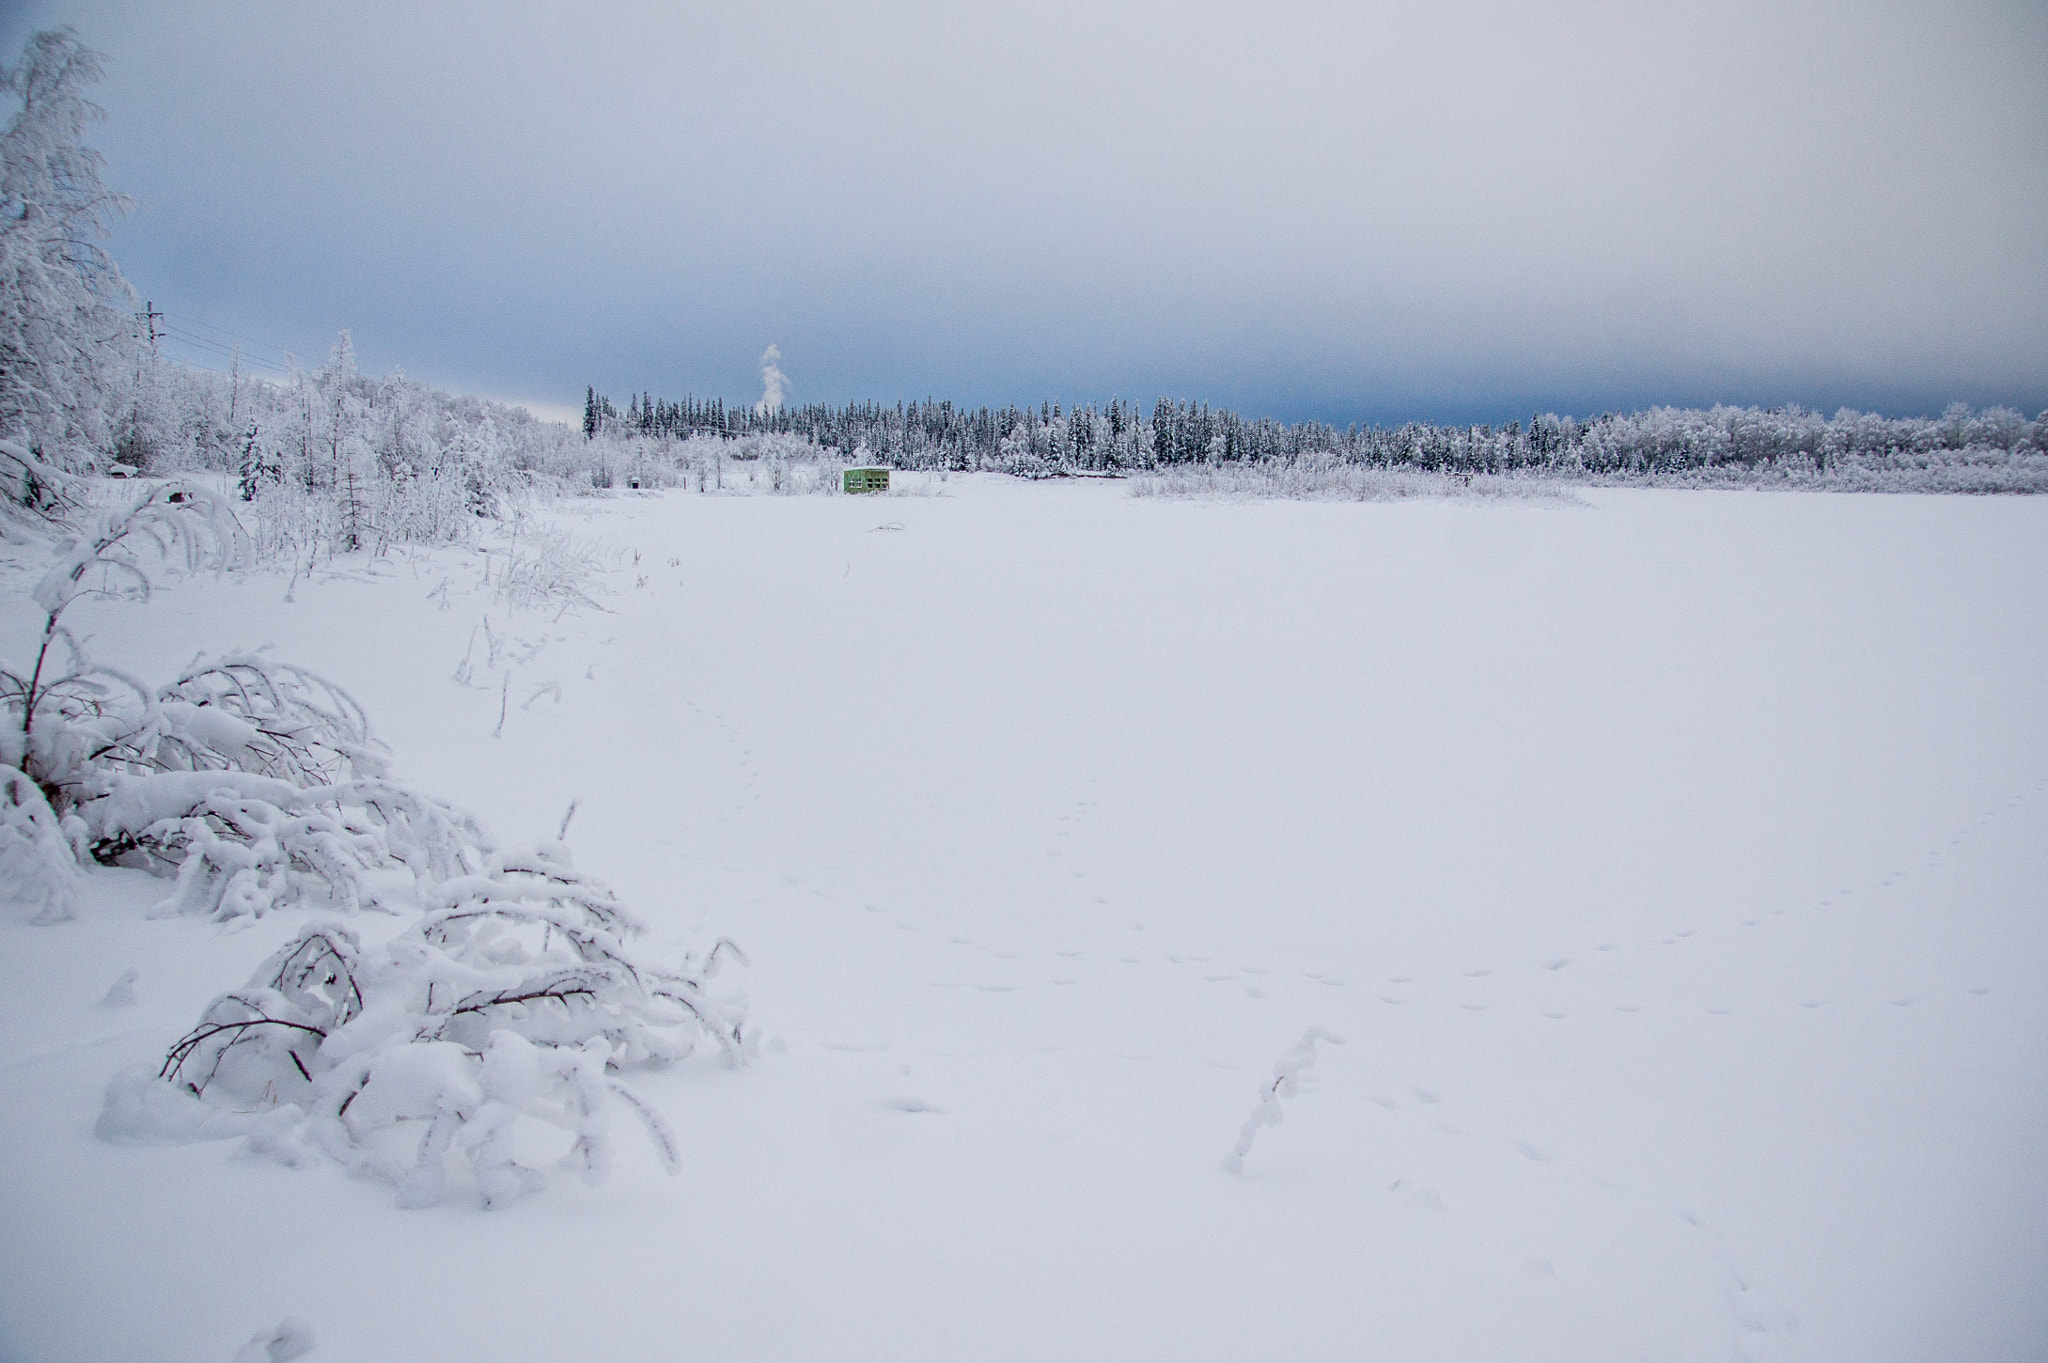 Sony Alpha DSLR-A550 + Sony DT 16-105mm F3.5-5.6 sample photo. Alaska snow landscapes photography